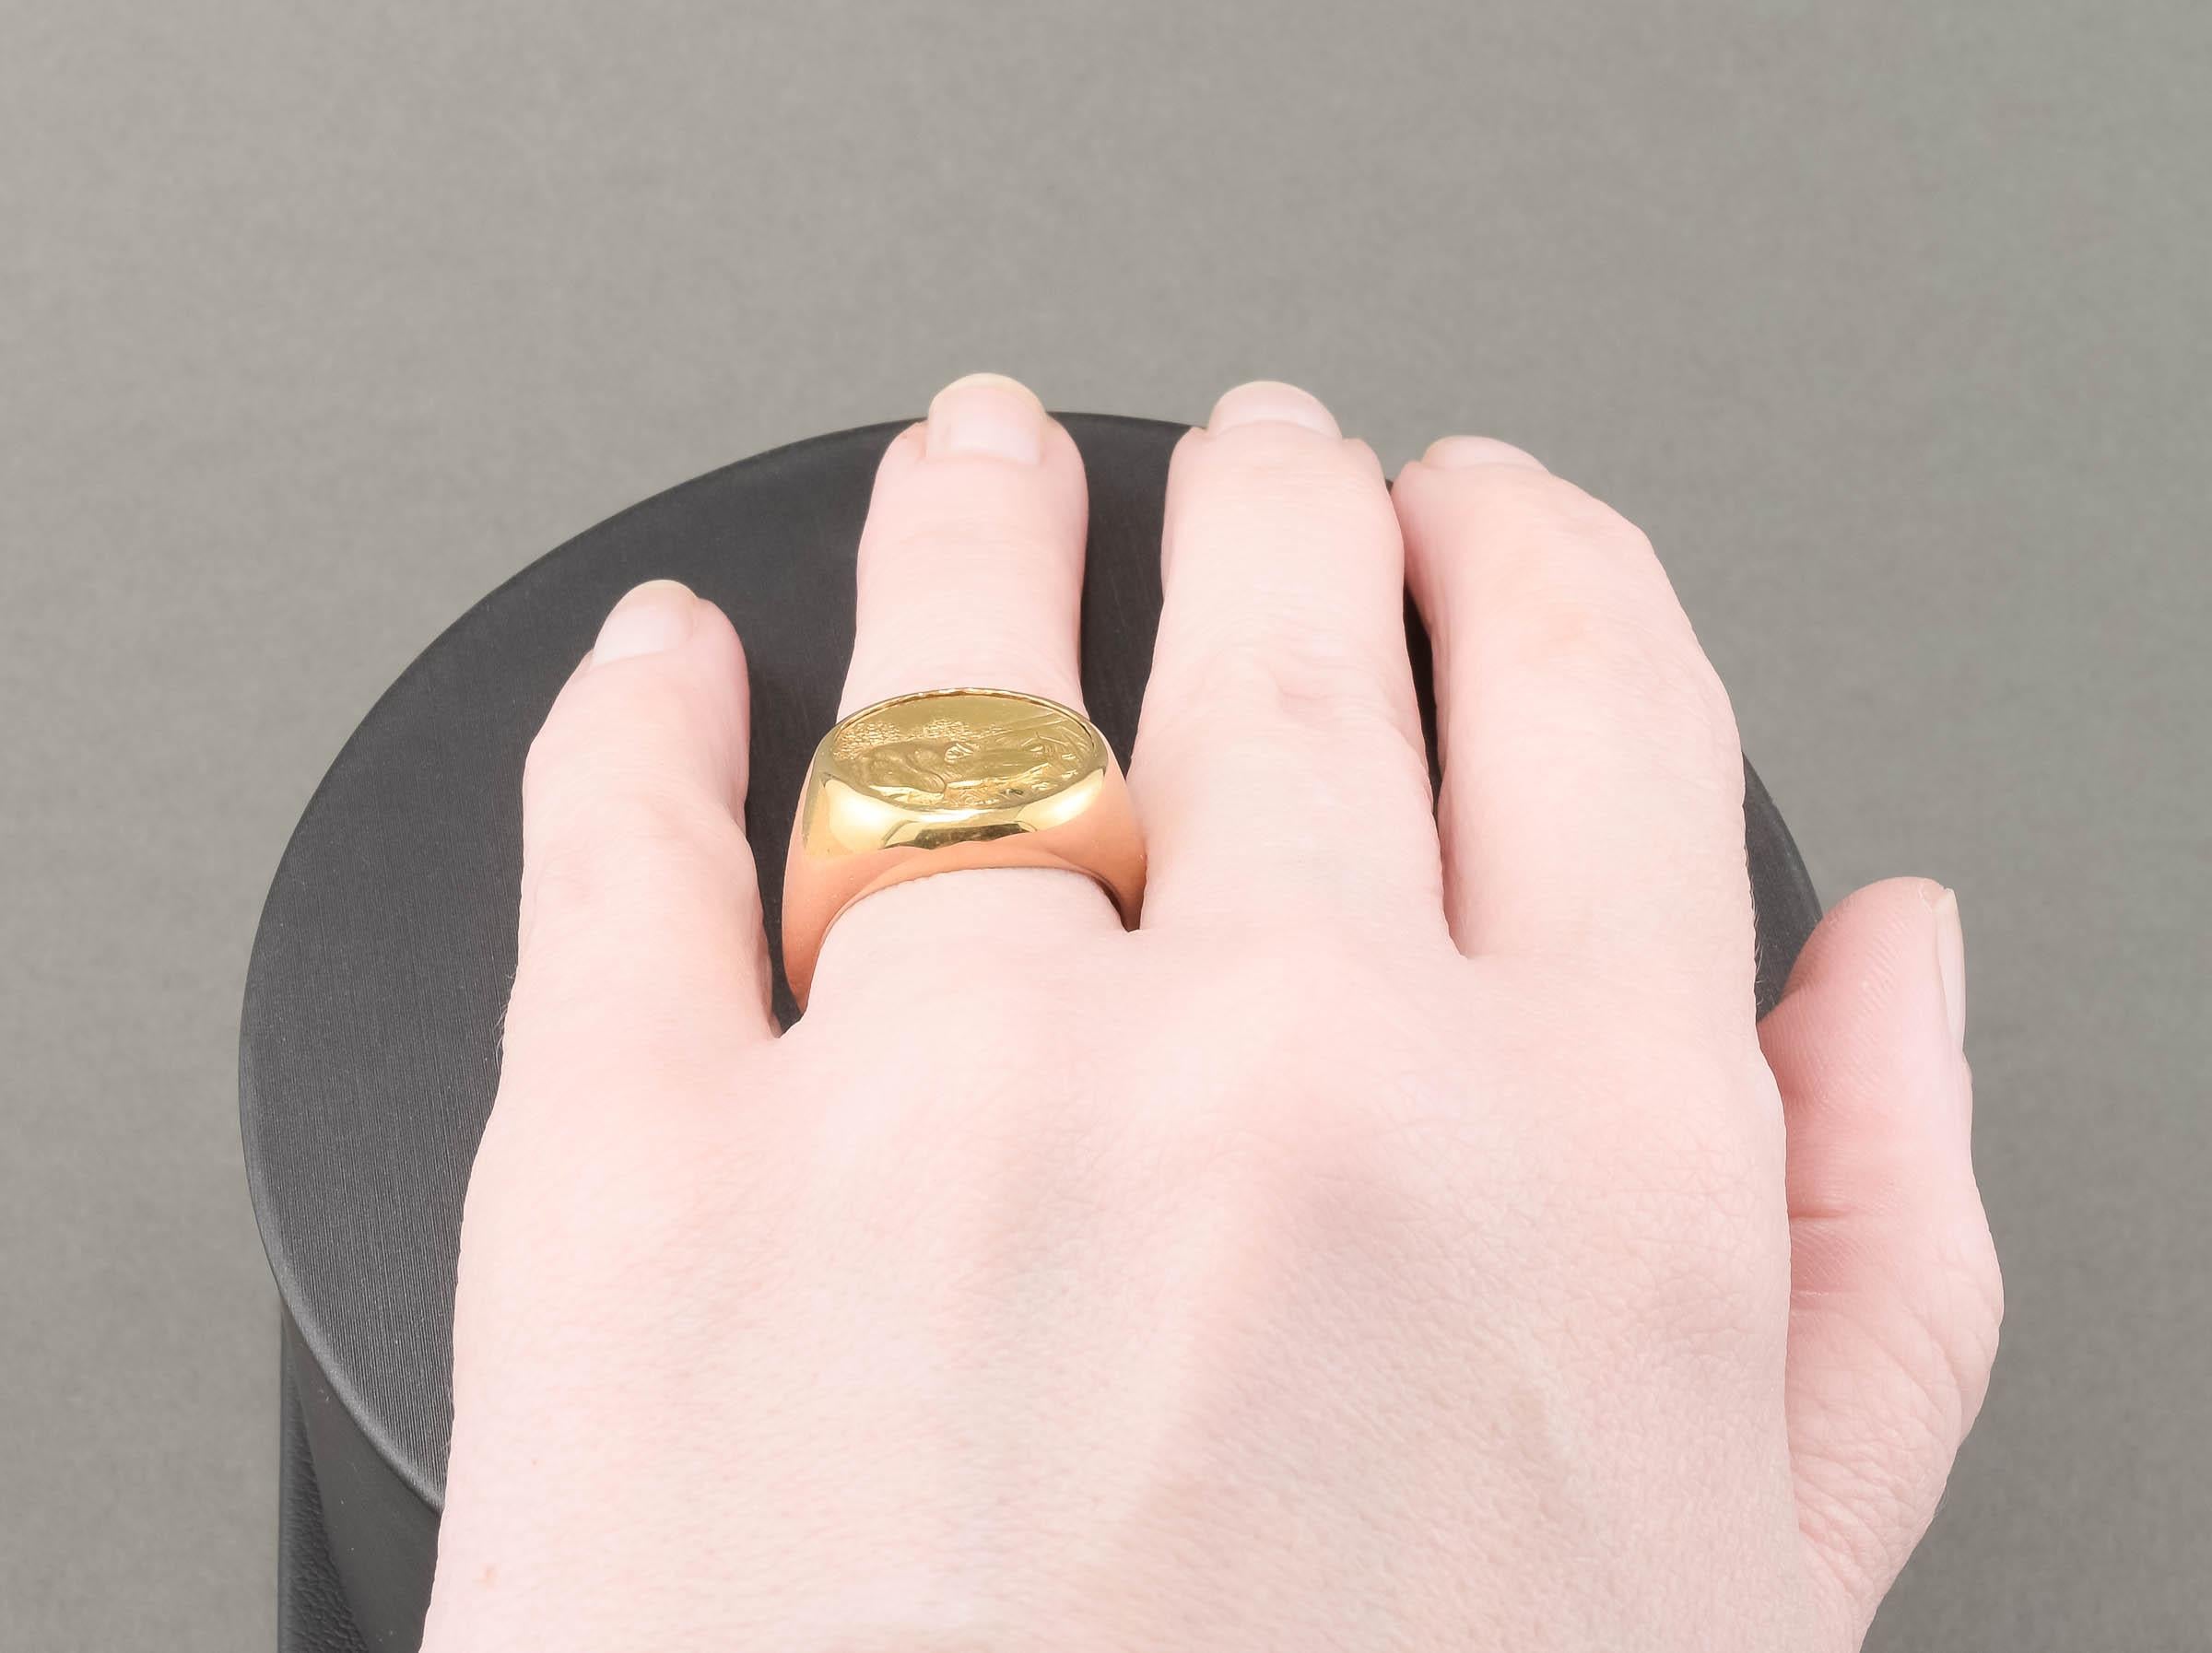 Dog Signet Ring in 14k Gold, Substantial Art Nouveau Design For Sale 1